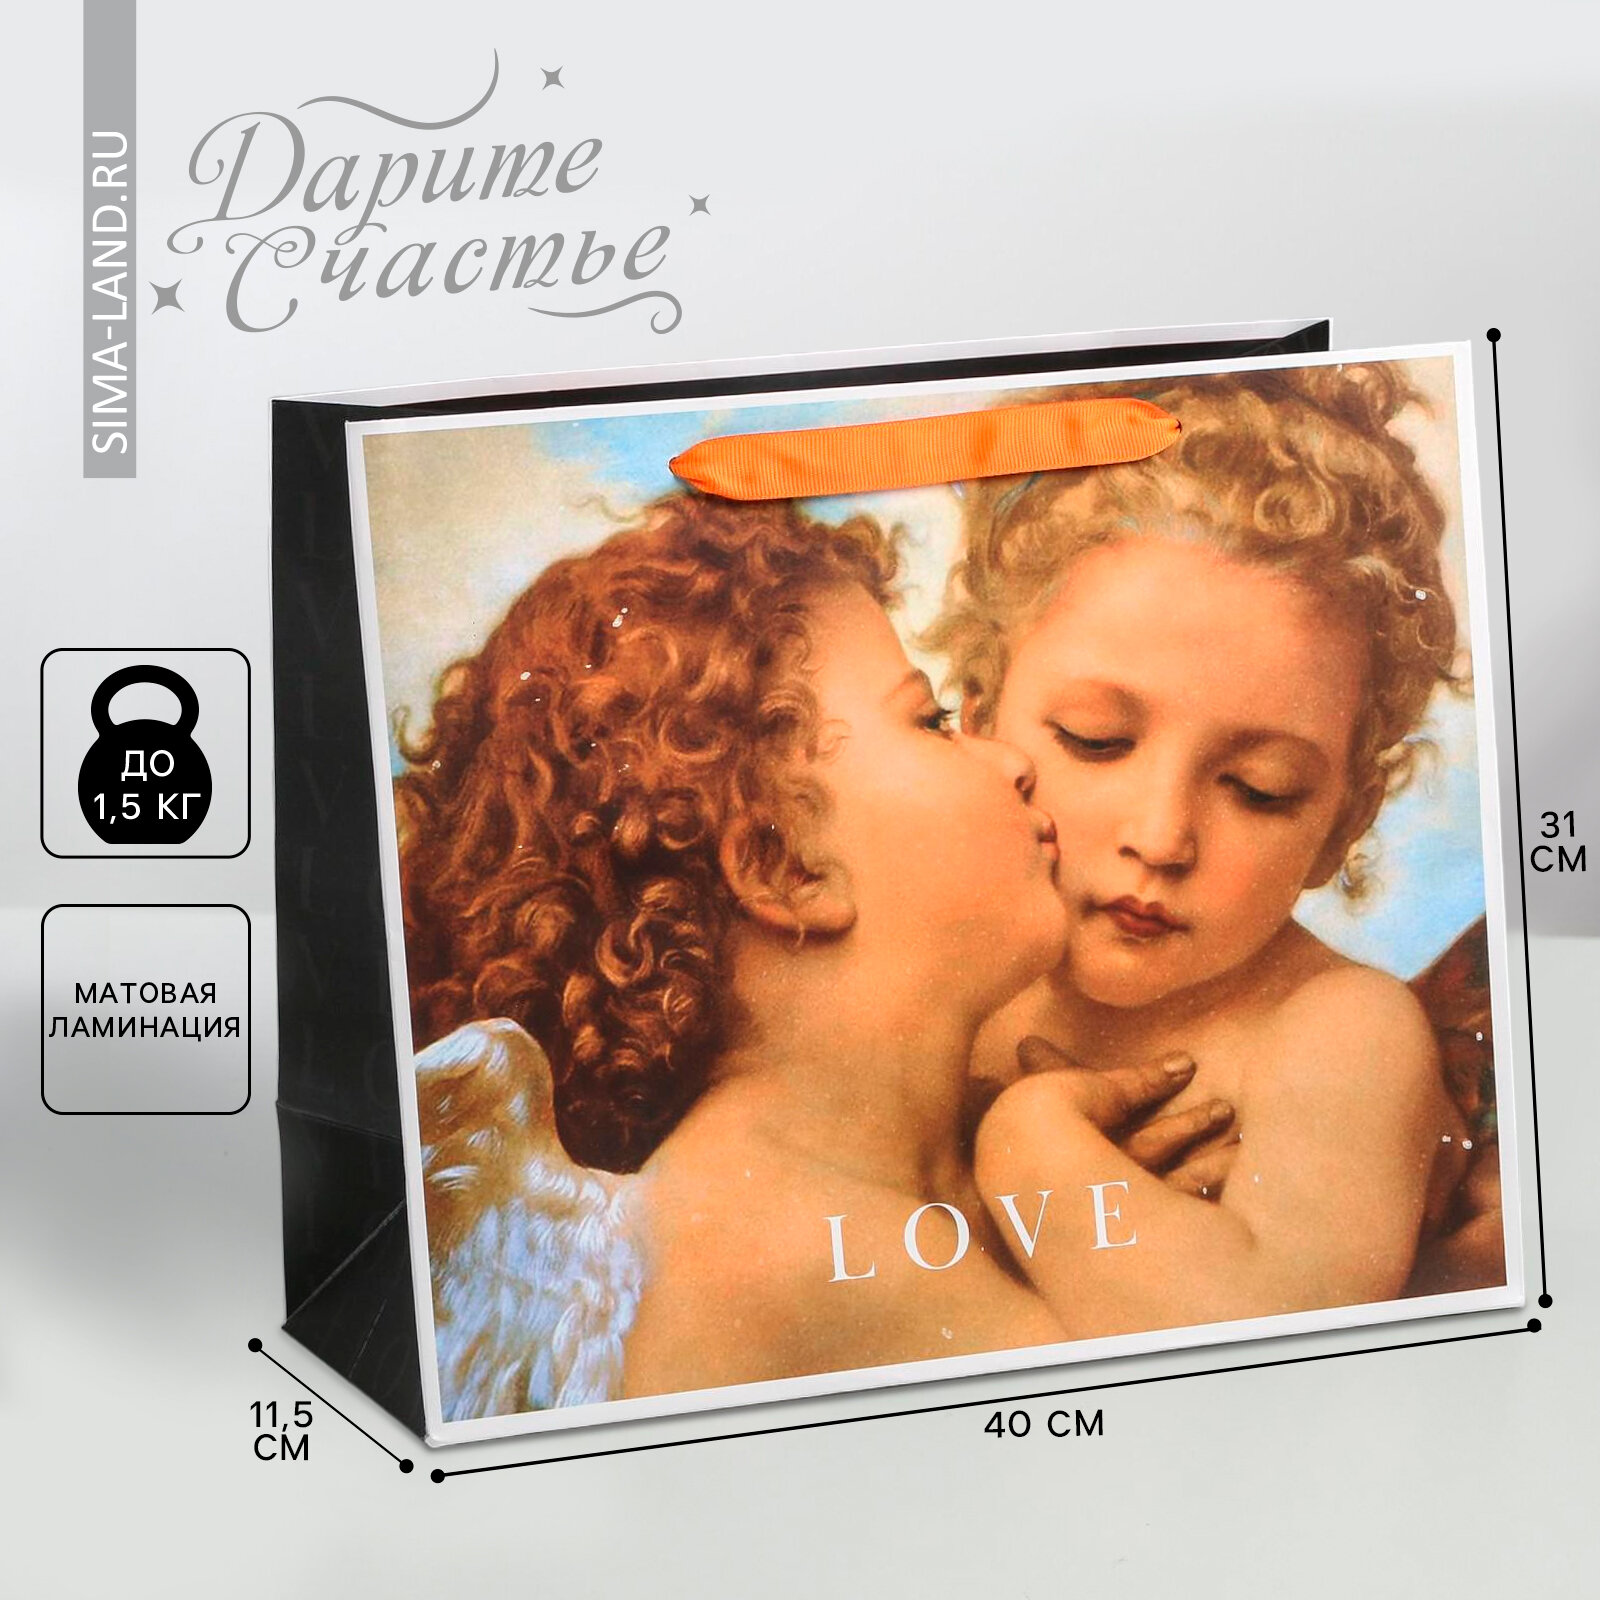 Пакет ламинированный горизонтальный Love, L 40 × 31 × 11,5 см (1шт.)